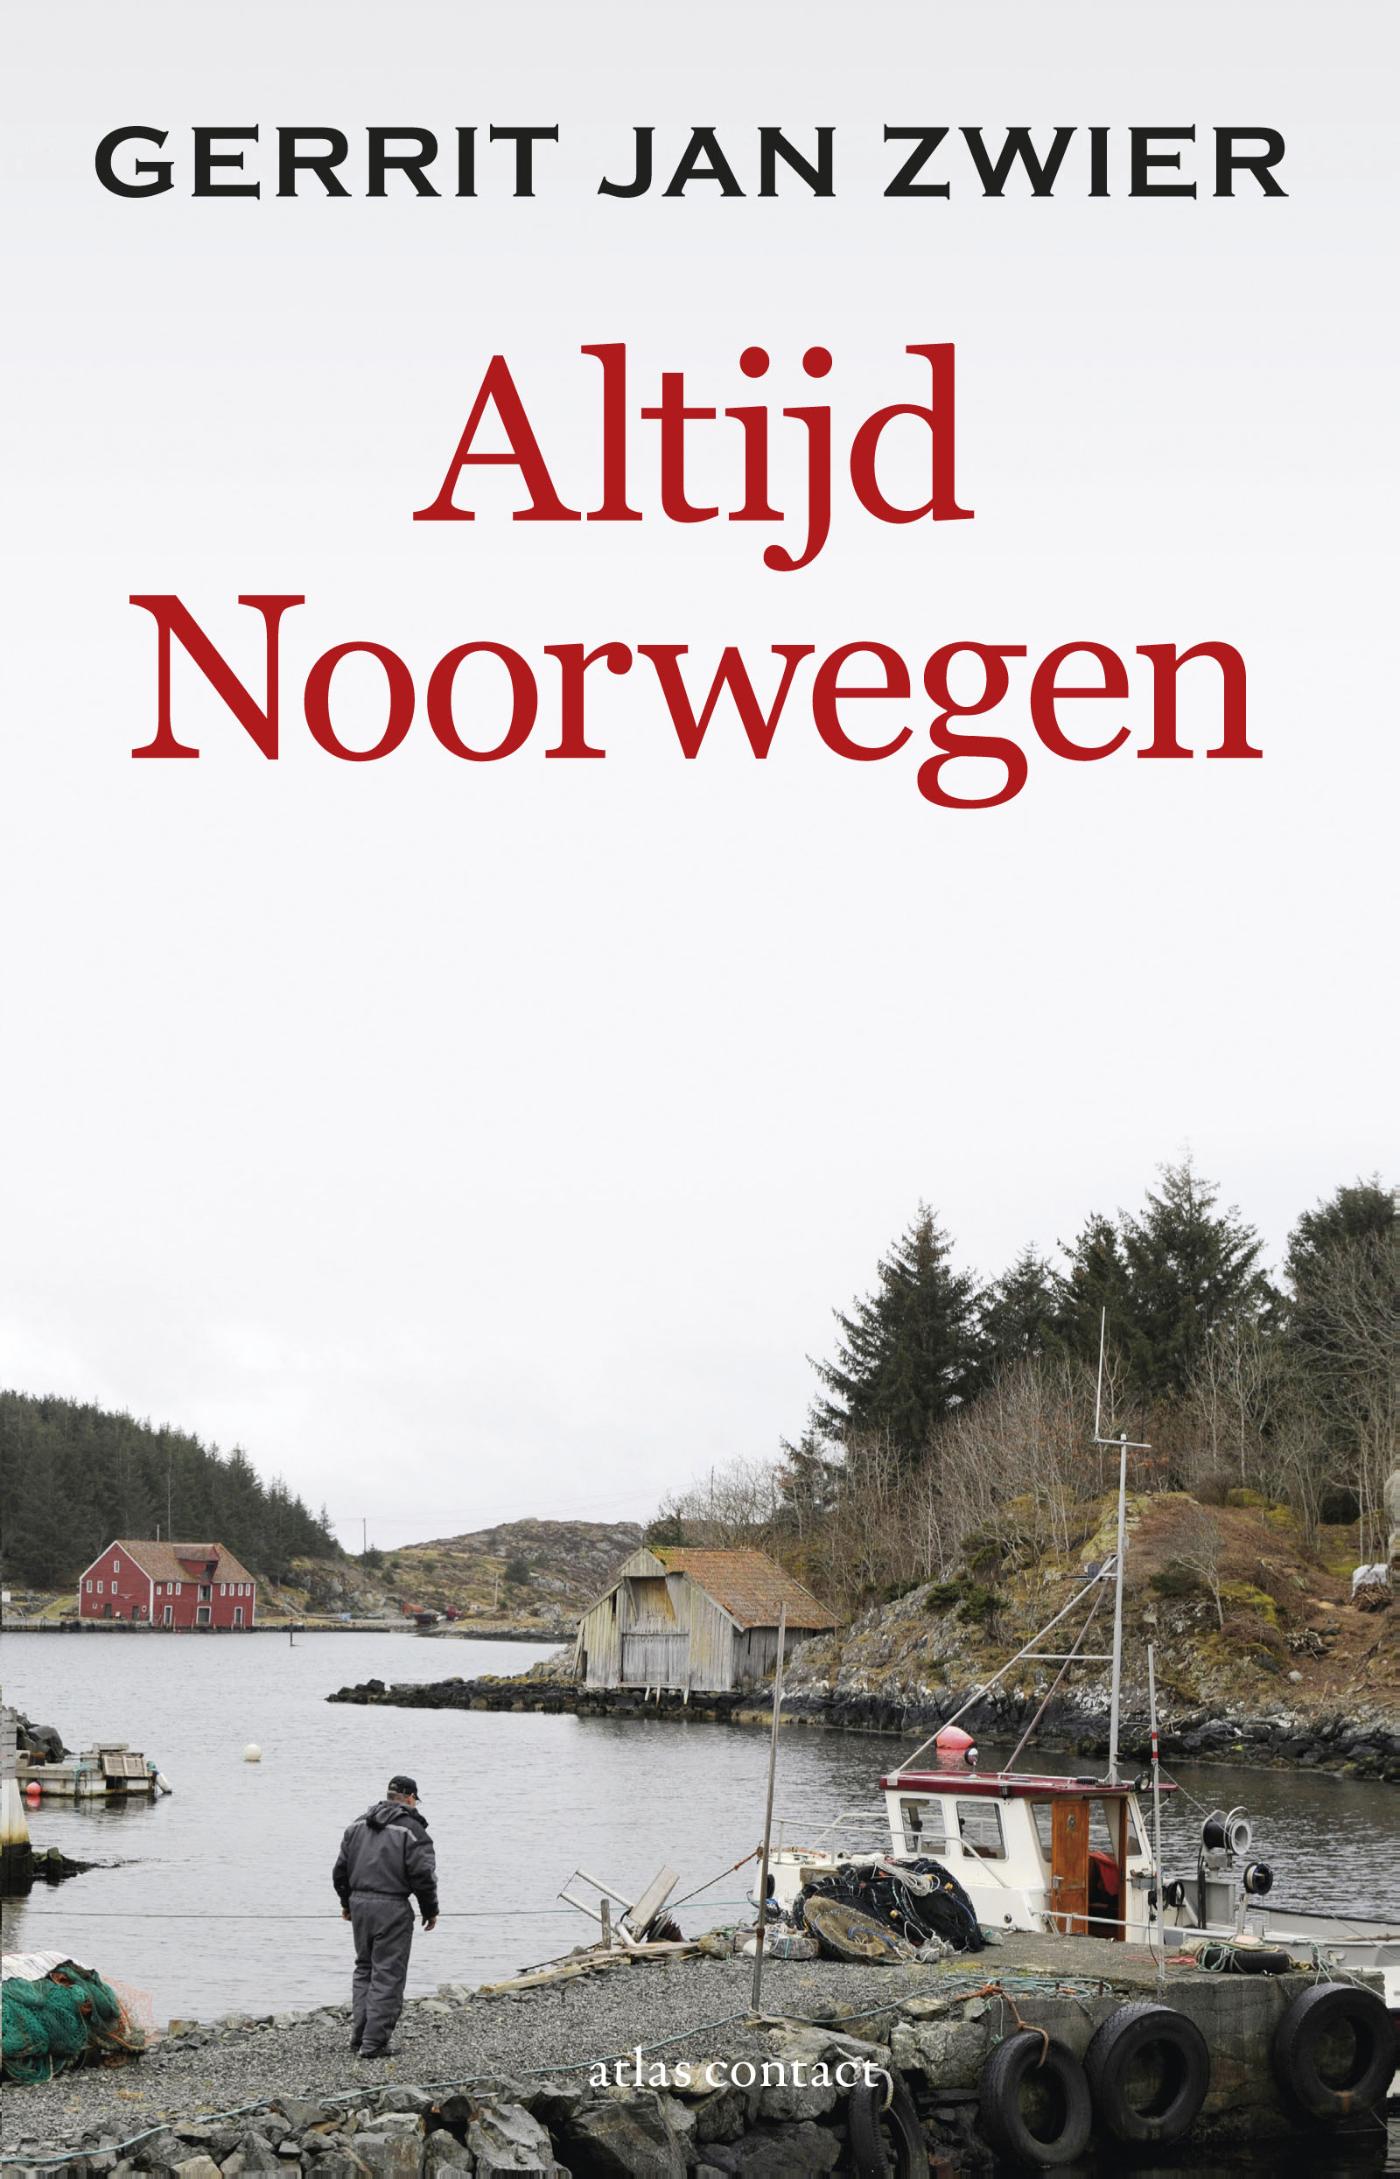 Altijd Noorwegen | Gerrit Jan Zwier 9789045031705 Gerrit Jan Zwier Atlas-Contact   Reisverhalen & literatuur Noorwegen